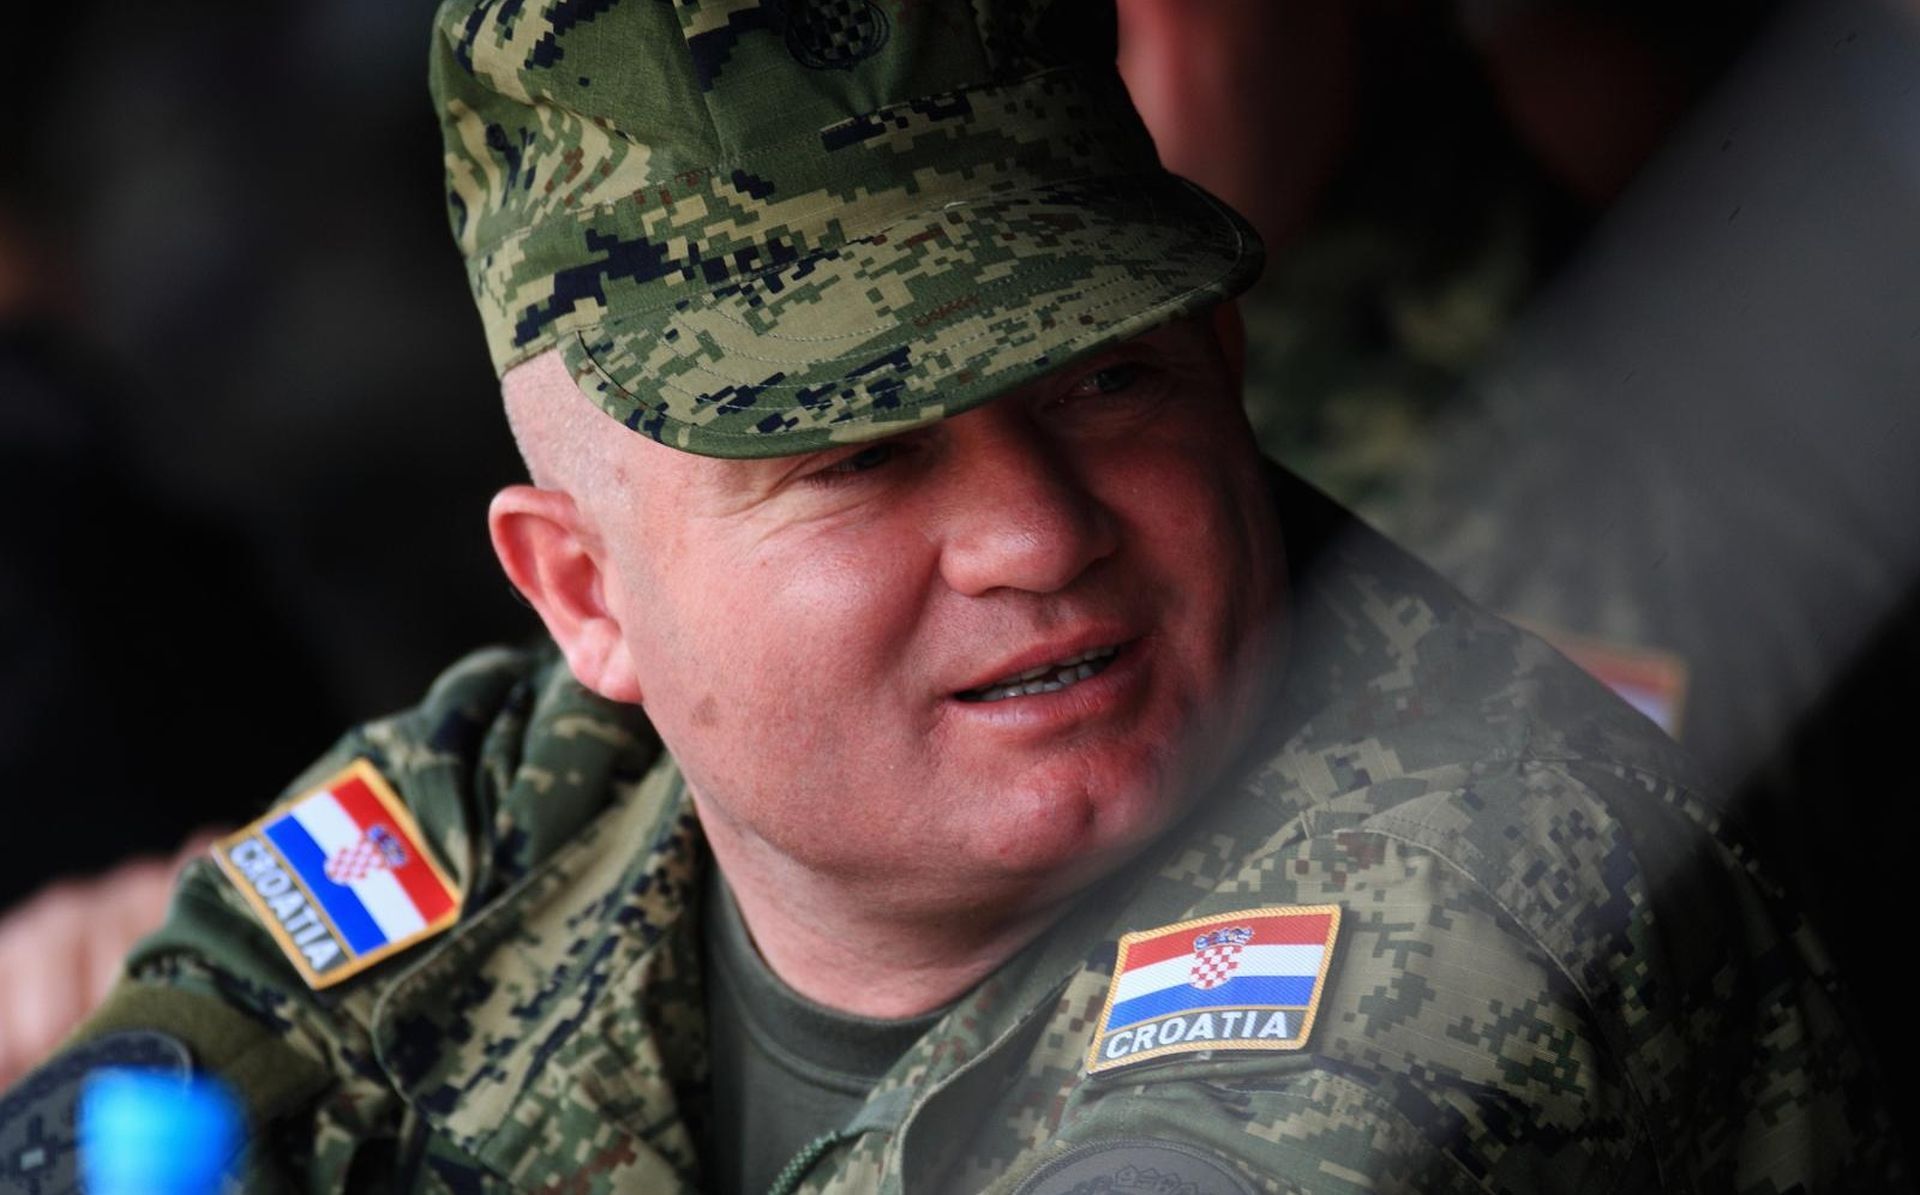 12.06.2011., Slunj - General Mladen Kruljac, na vojnoj vjezbi u Slunju.
Photo: Zeljko Hladika/PIXSELL